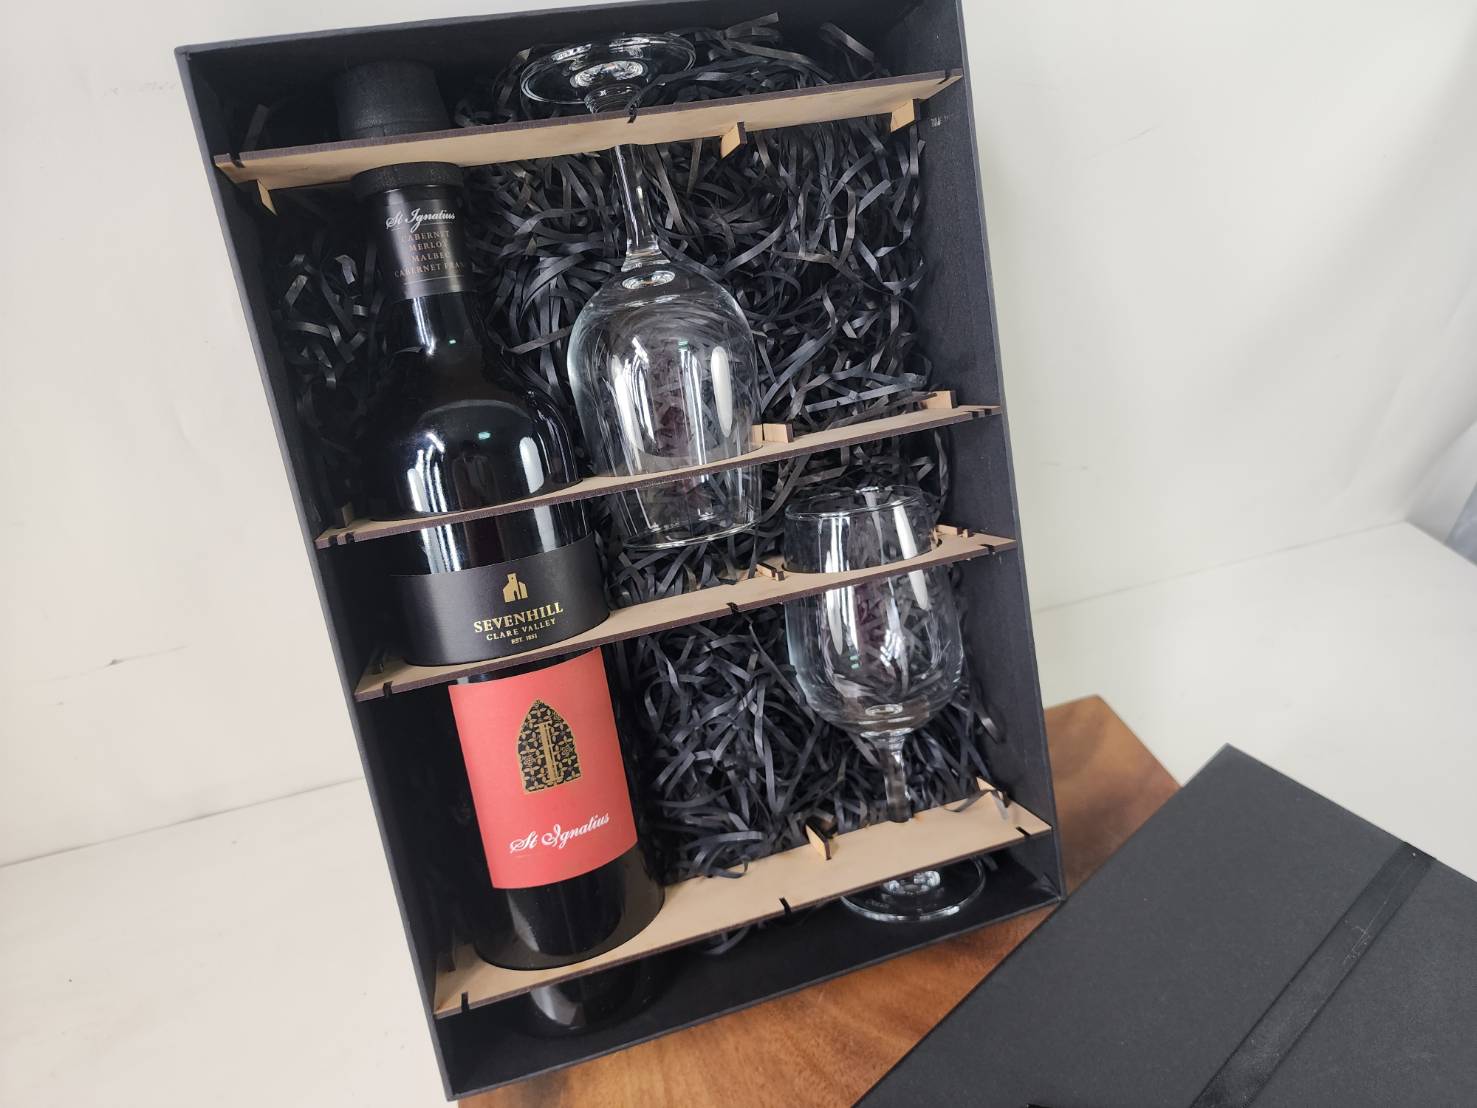 玻璃杯雕刻 葡萄酒 紅酒瓶 酒杯禮盒附提袋 需自提供酒瓶 可雷射刻印LOGO字圖 | 第一張展示圖